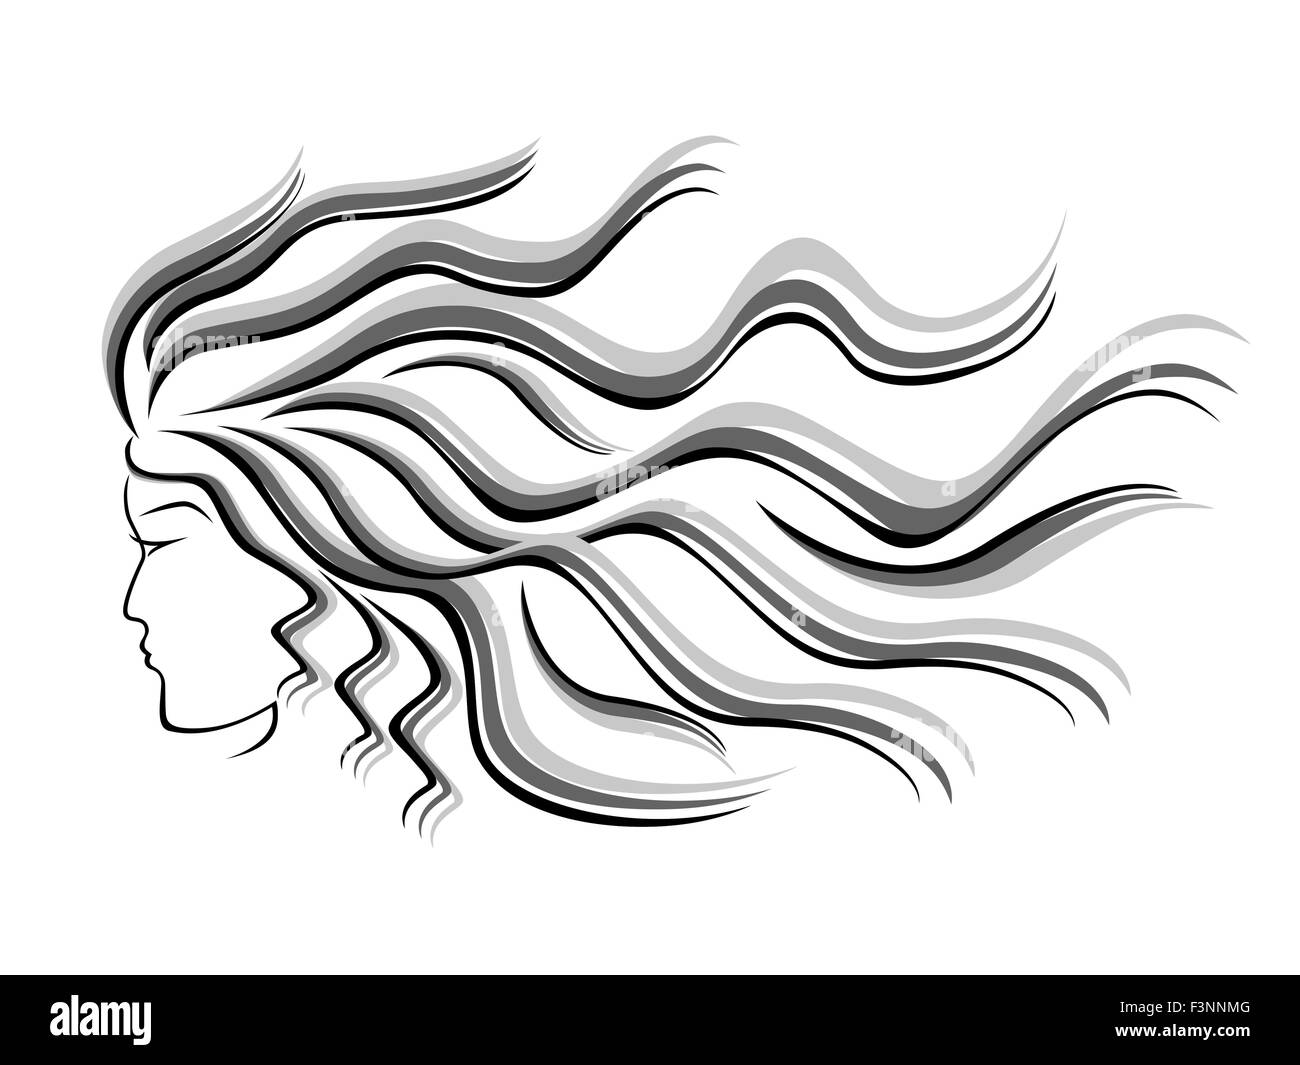 Schwarze und graue Silhouette des weiblichen Kopf mit fließendem Haar, Handzeichnung Vektor-Illustration Stock Vektor